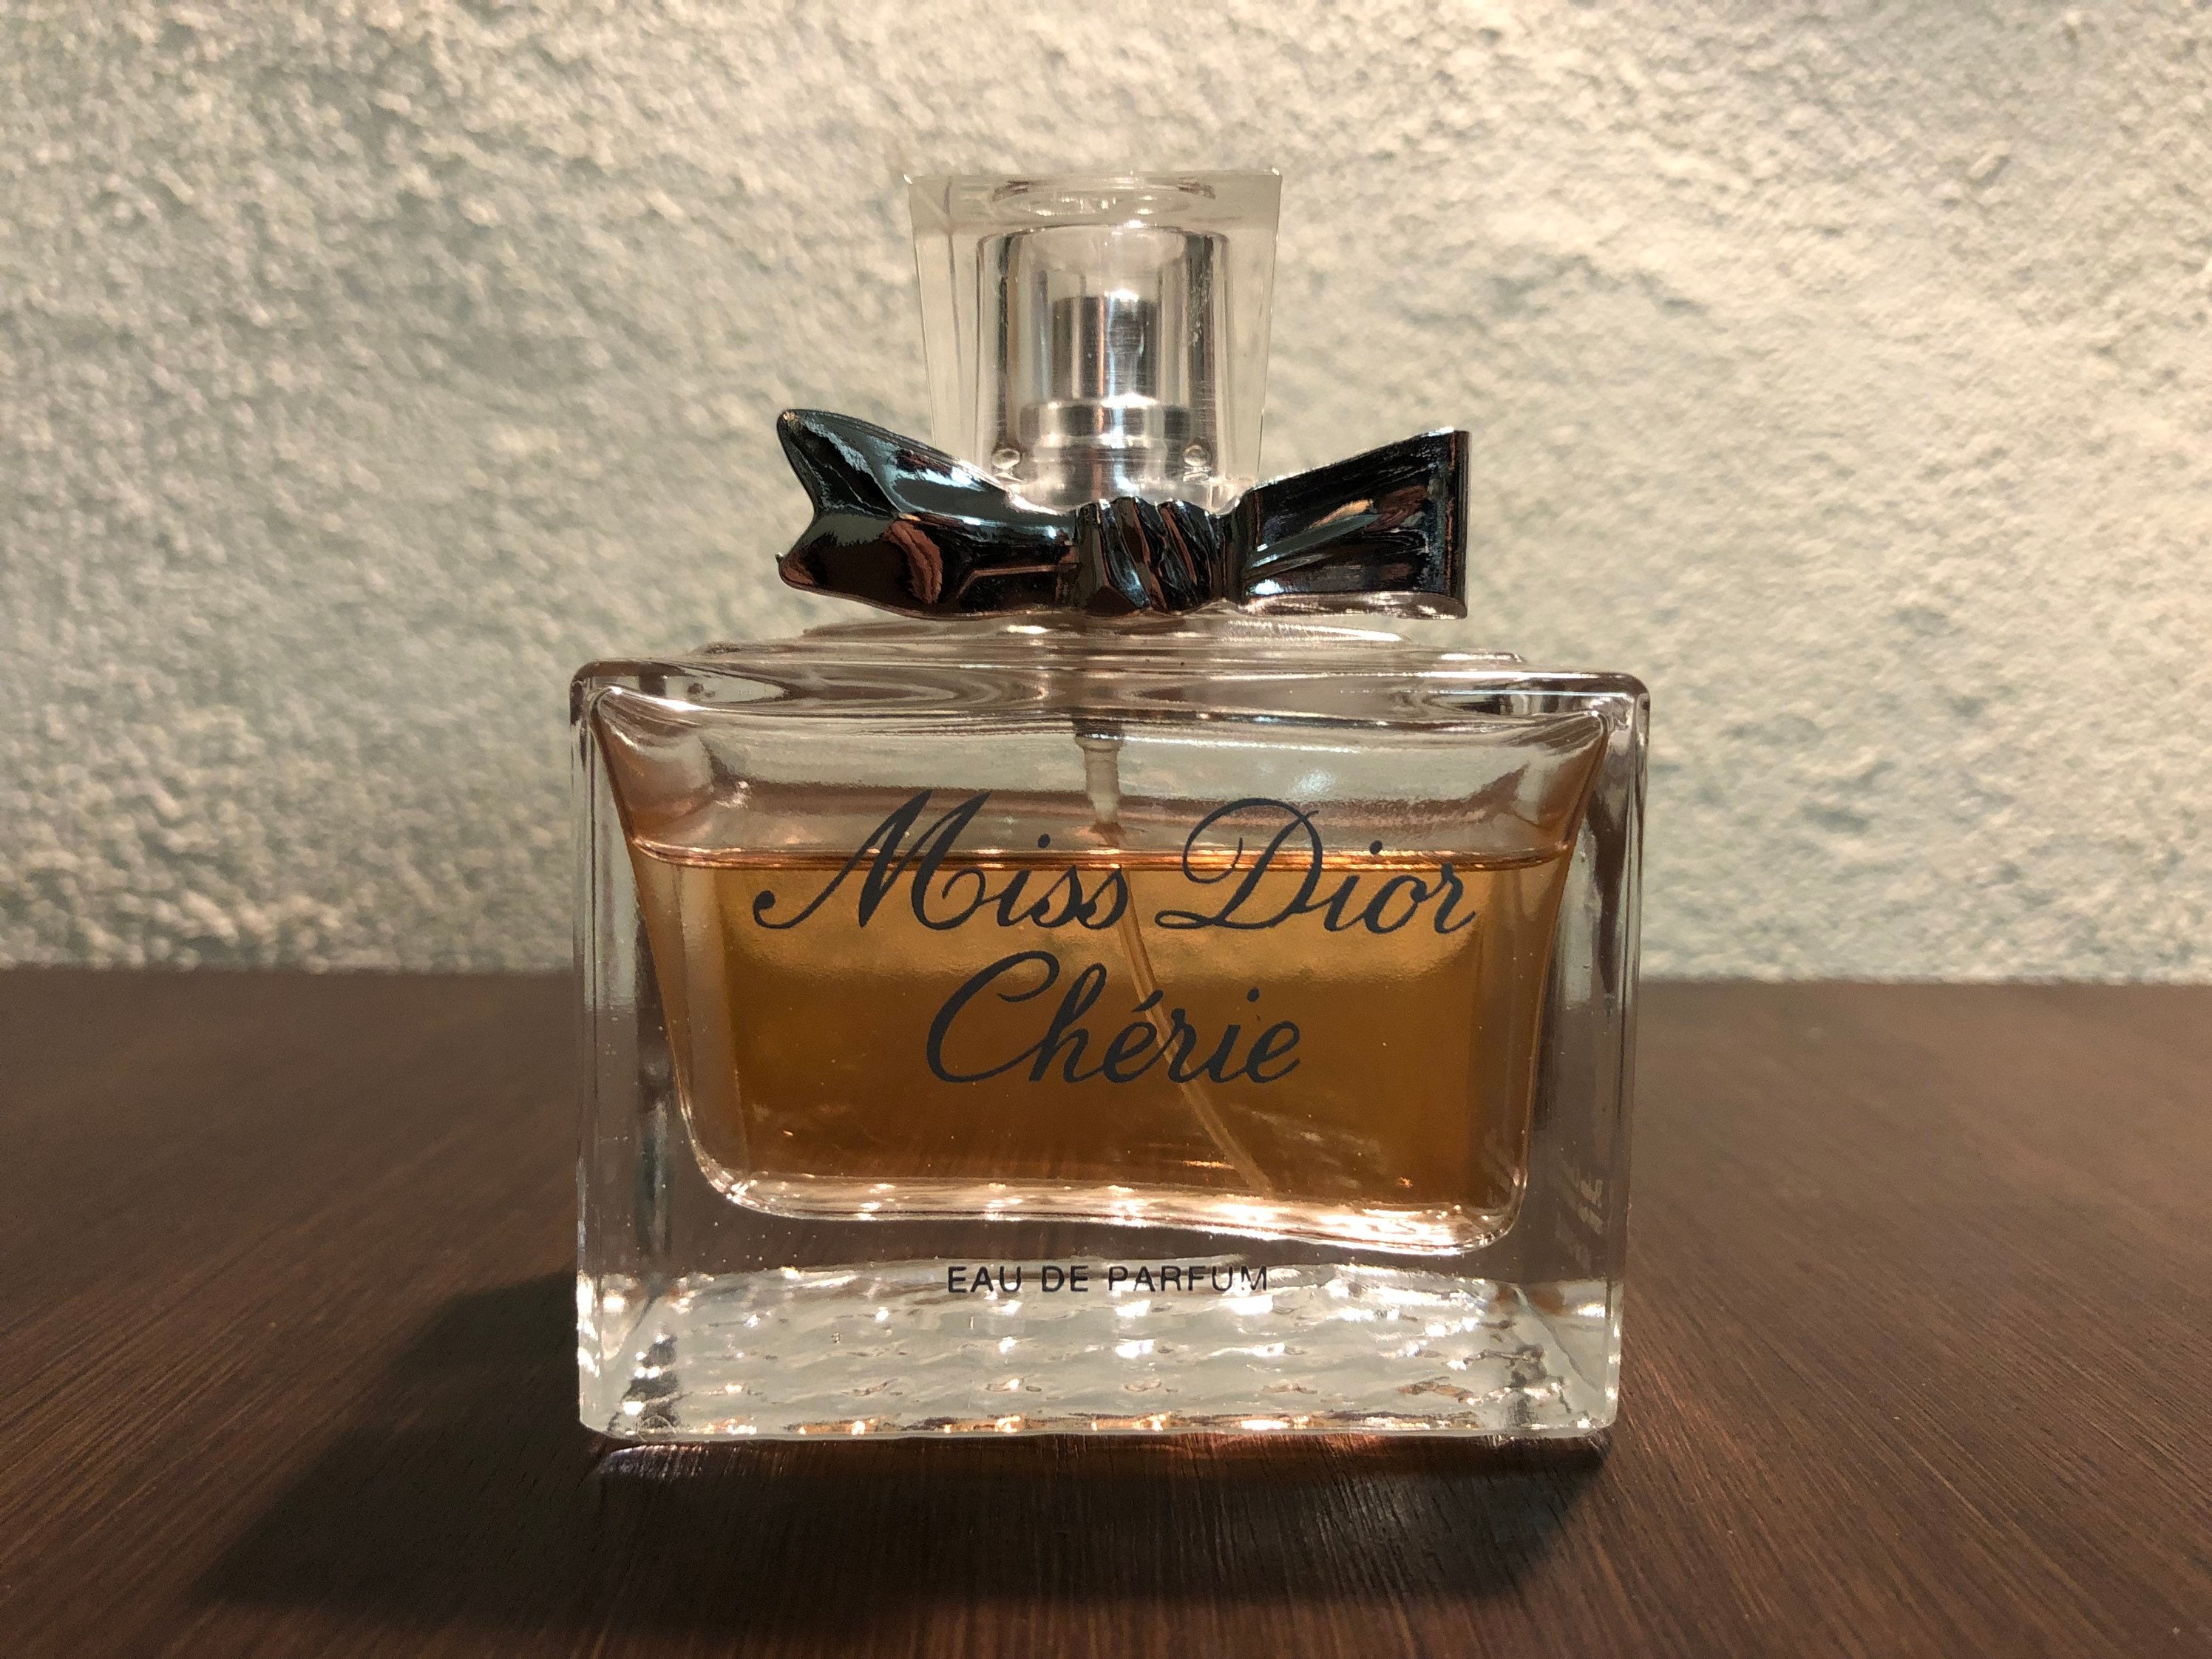 Miss Dior Parfum 